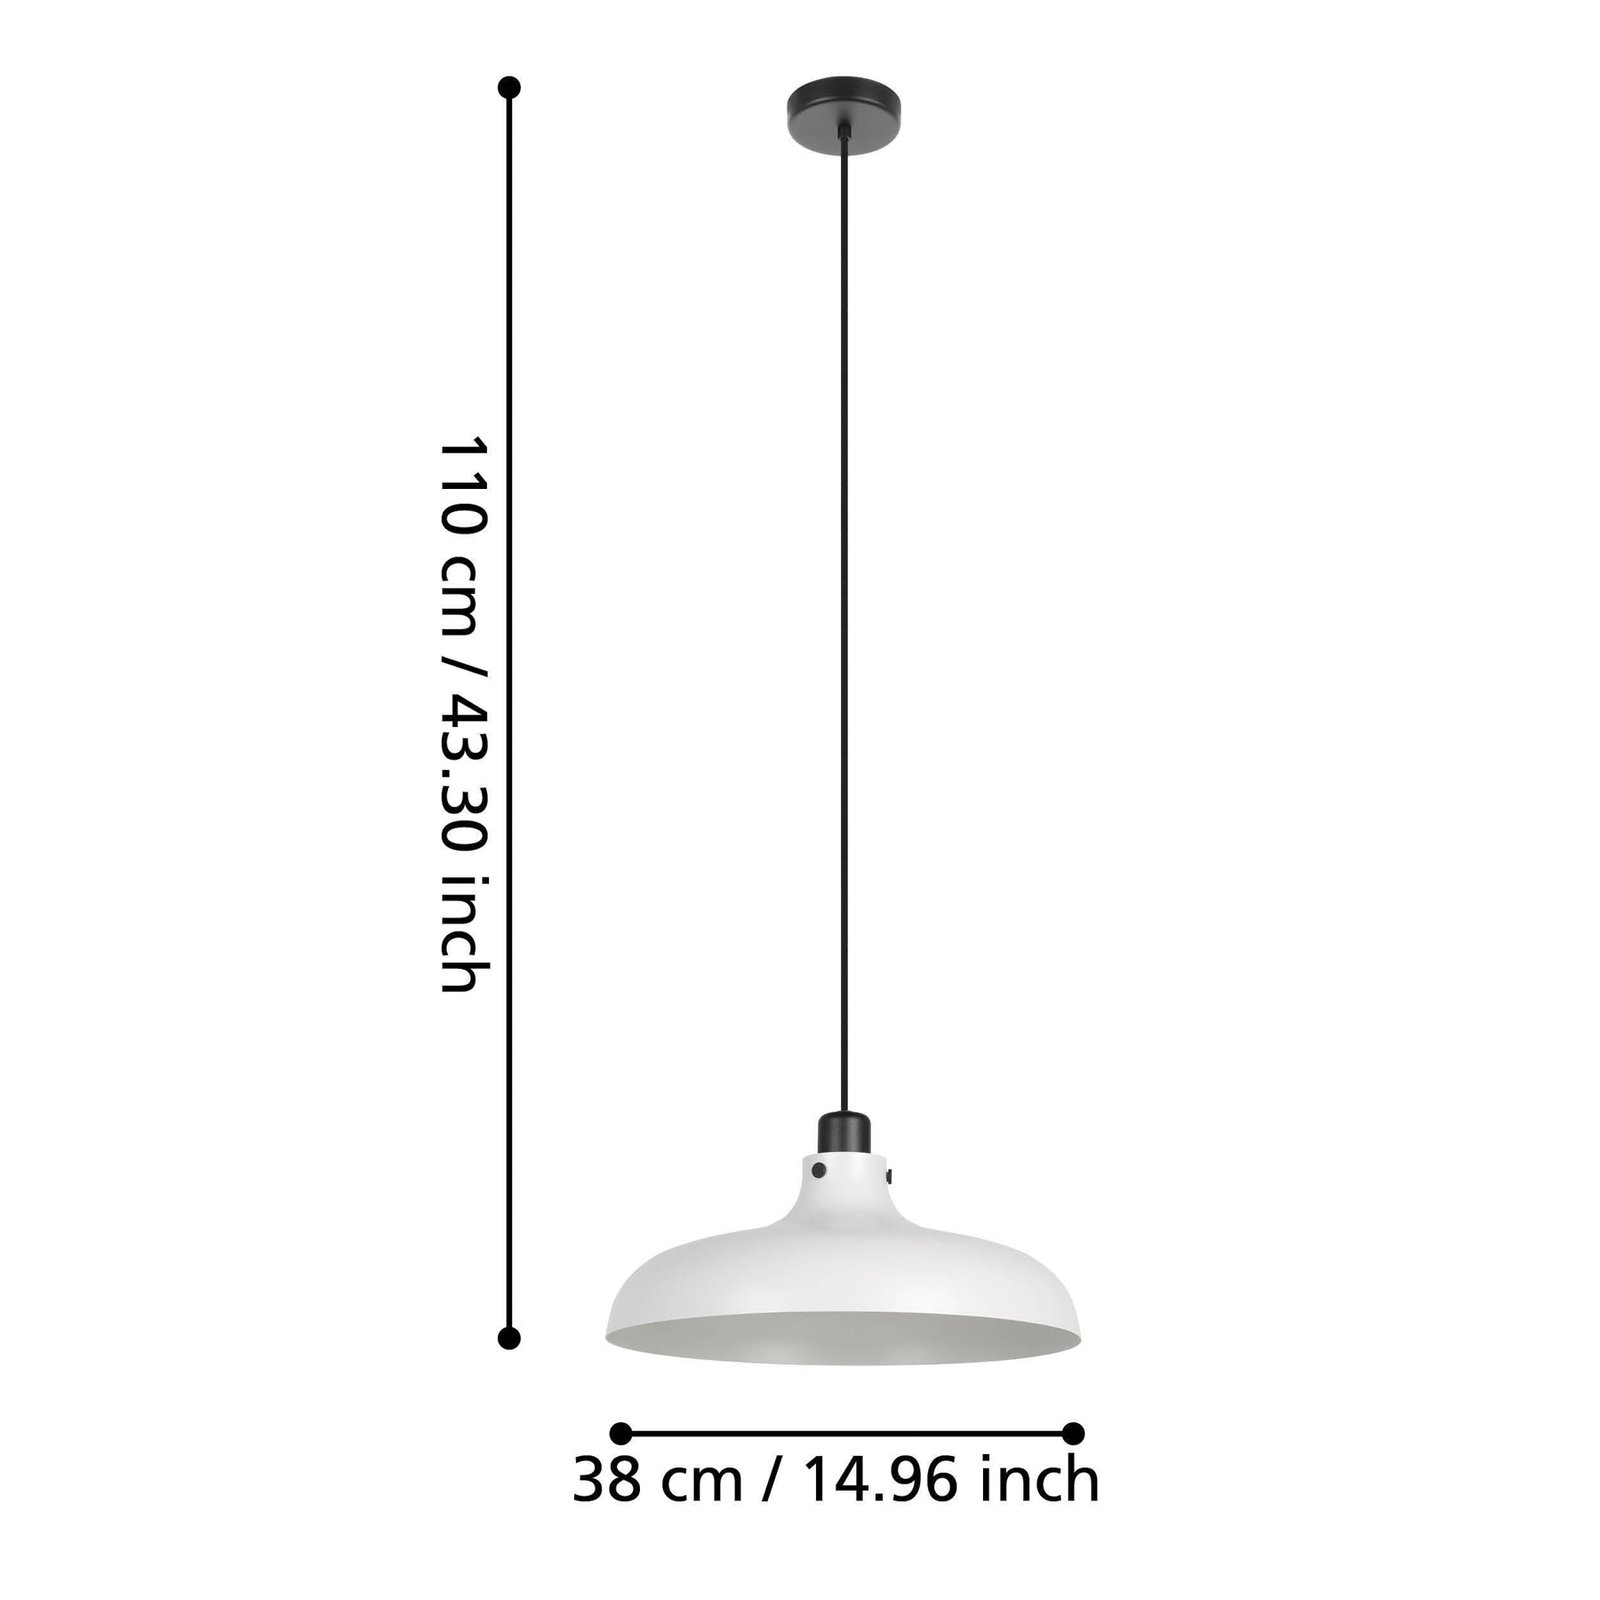 Matlock lampă suspendată, Ø 38 cm, gri/negru, oțel